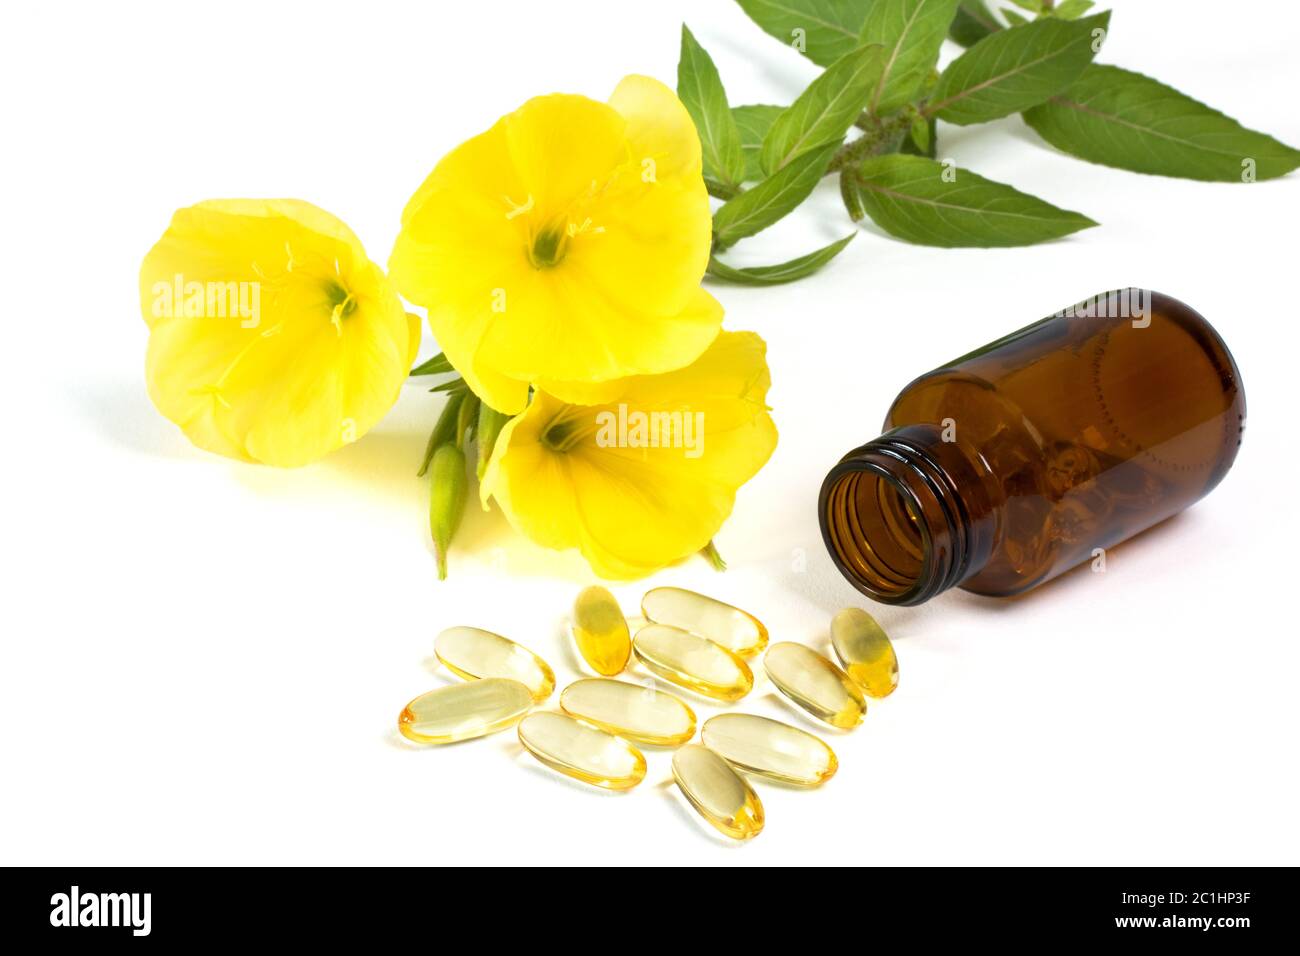 gelatin capsules with evening primrose oil Stock Photo